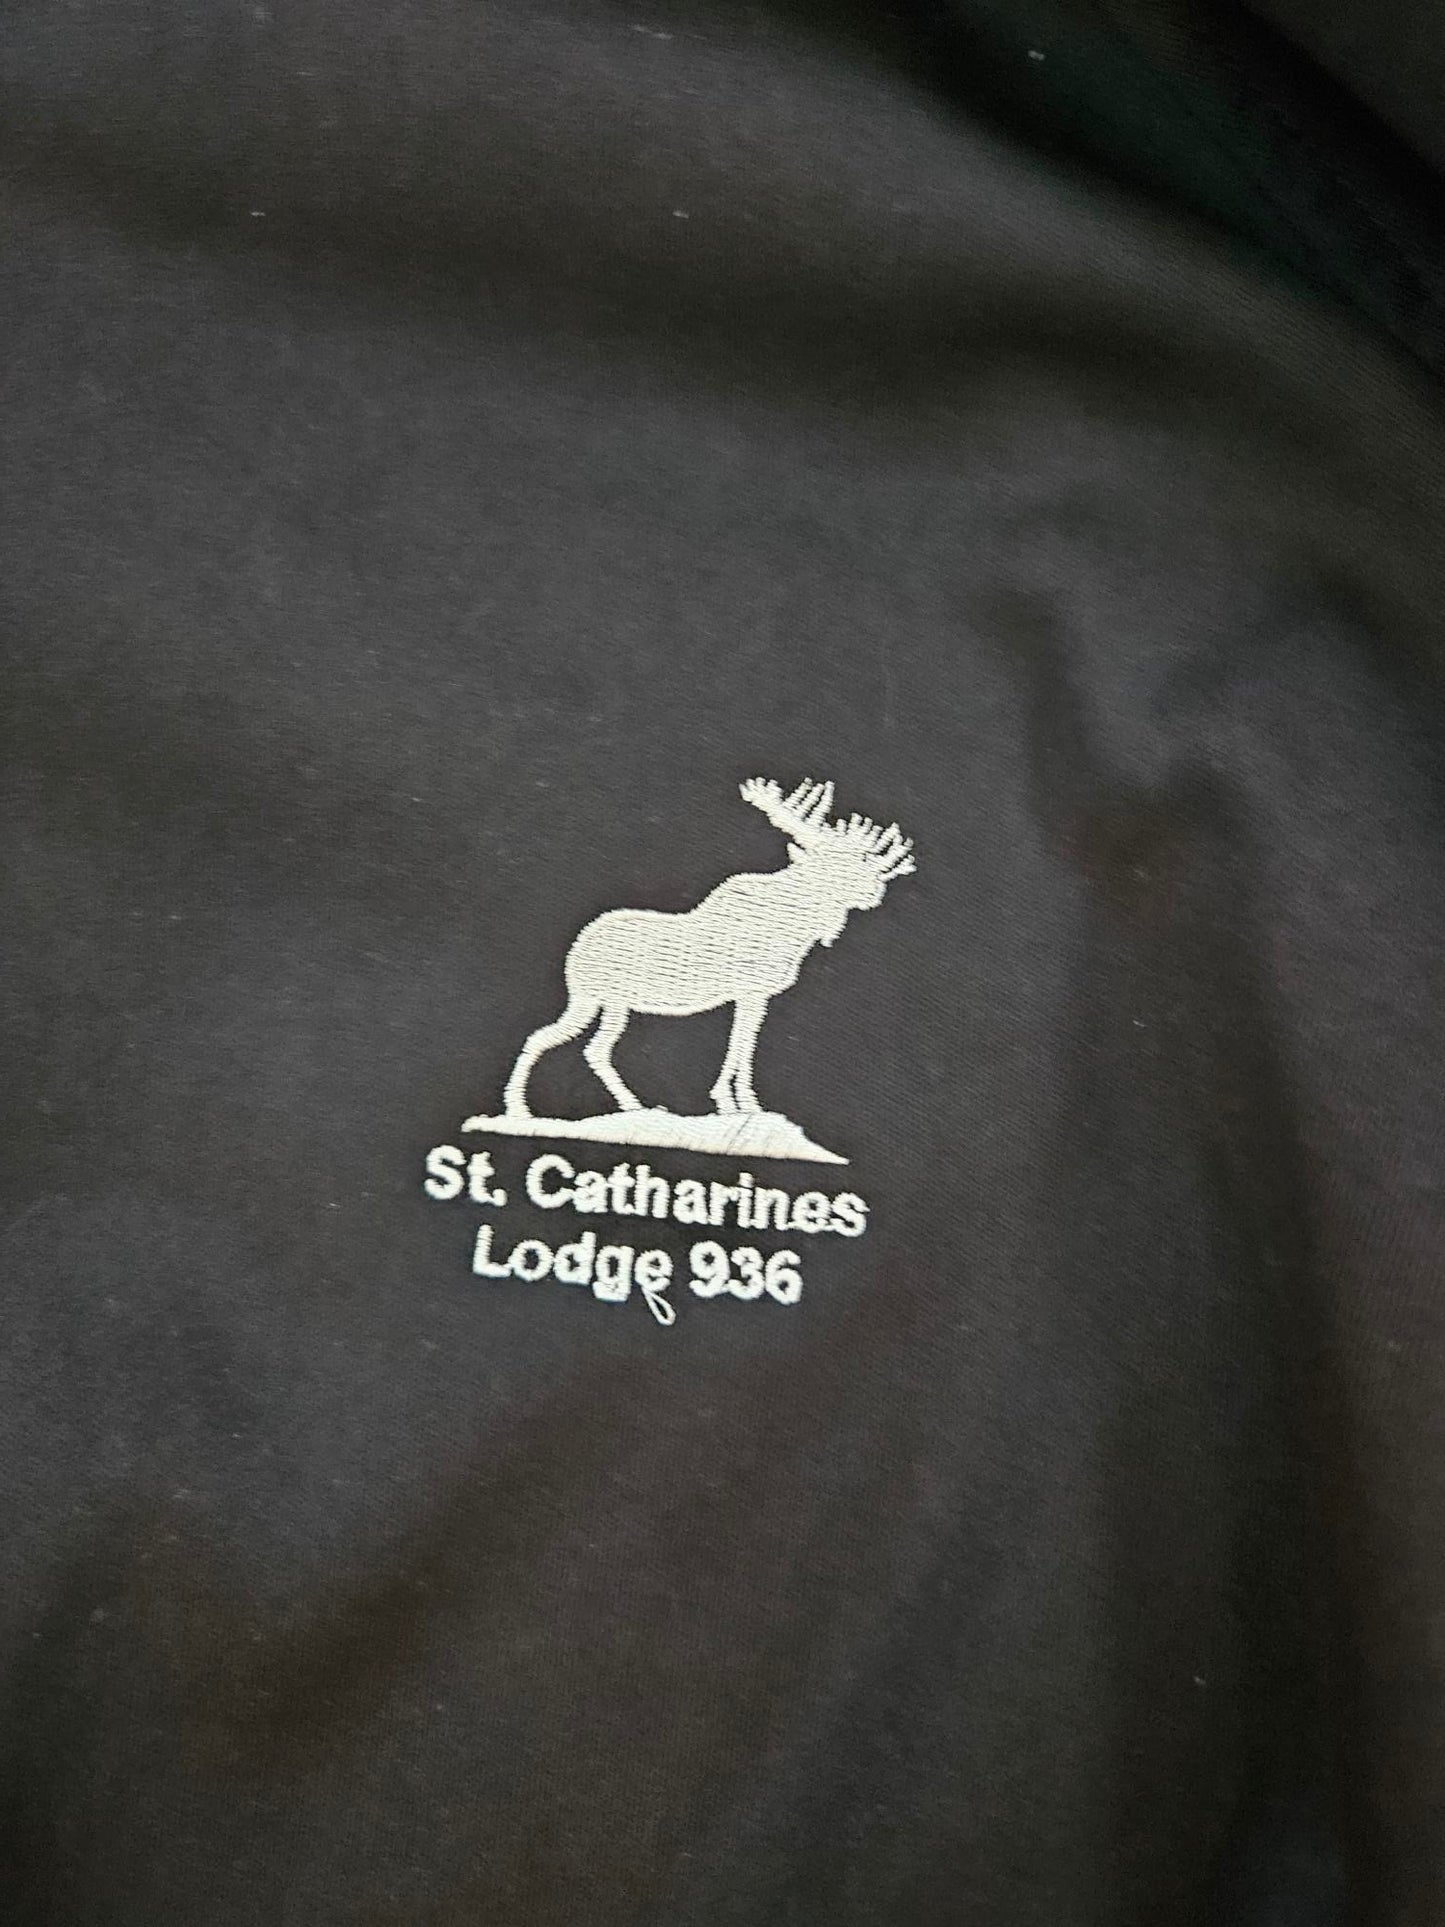 Dryframe Full Zip Hooded Jacket With Moose Lodge Logo (Custom Order)